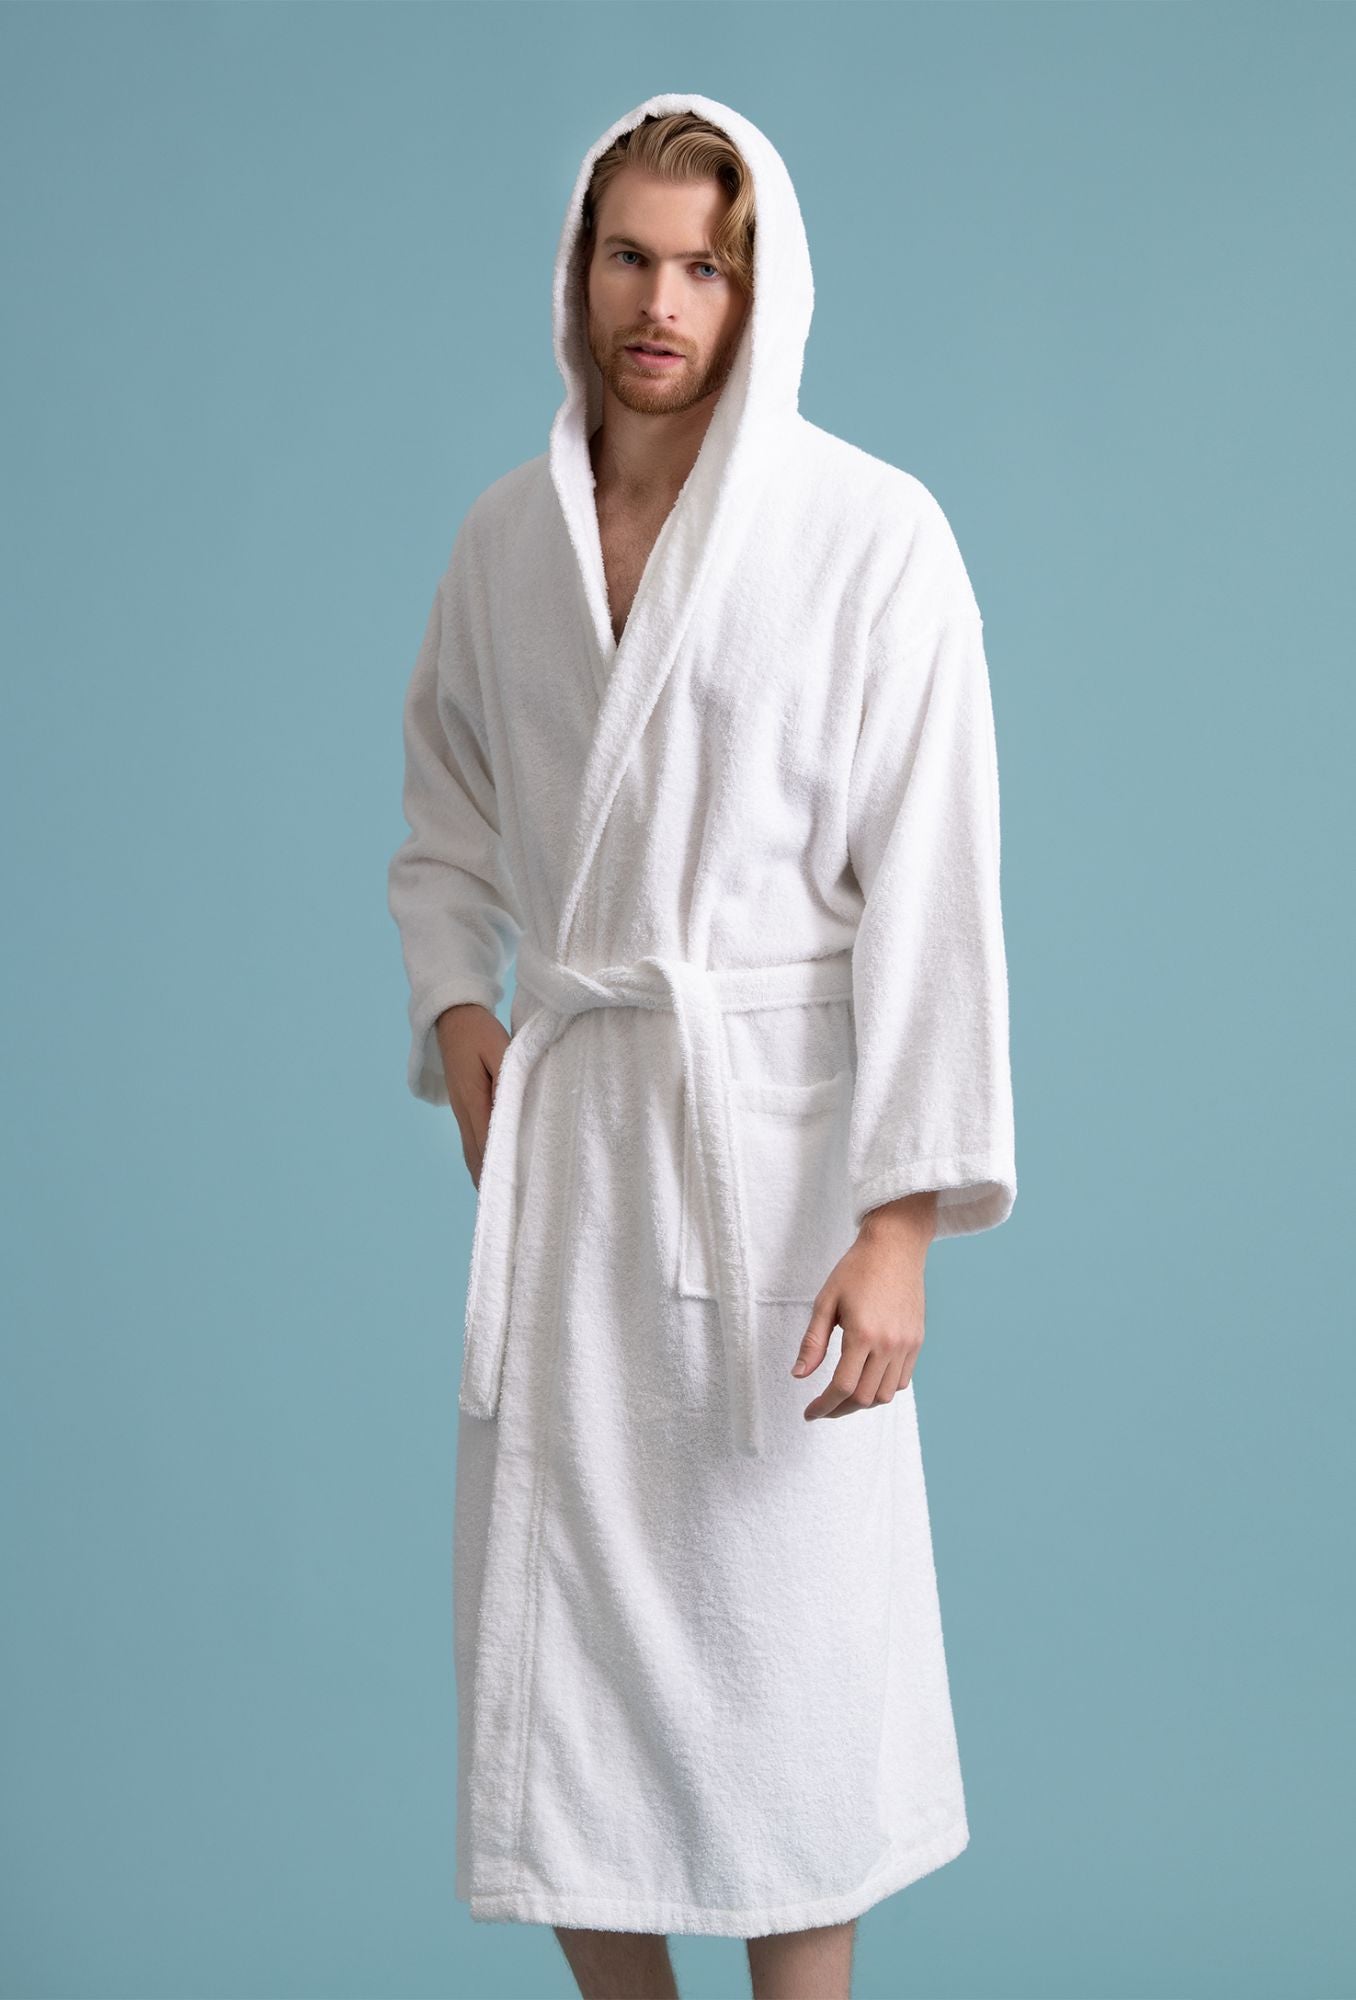 Men's Hooded Robe, Turkish Cotton Terry Hooded Spa White Bathrobe